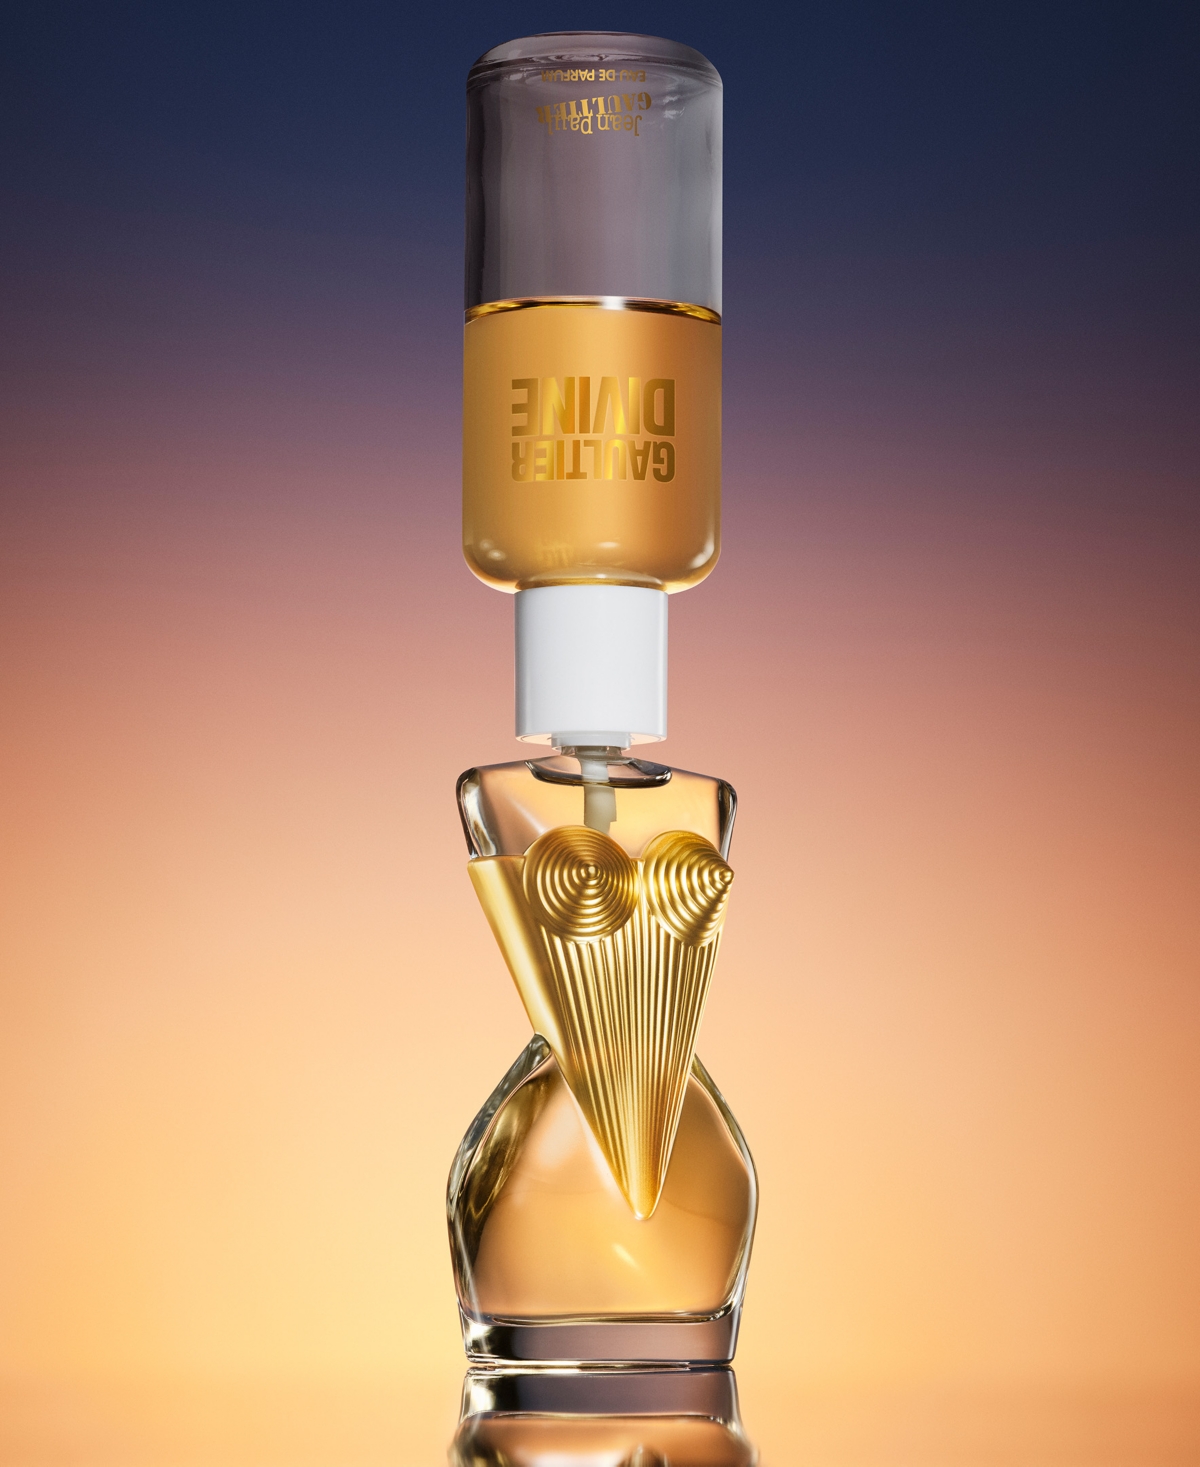 Shop Jean Paul Gaultier Gaultier Divine Eau De Parfum, 3.4 Oz. In No Color